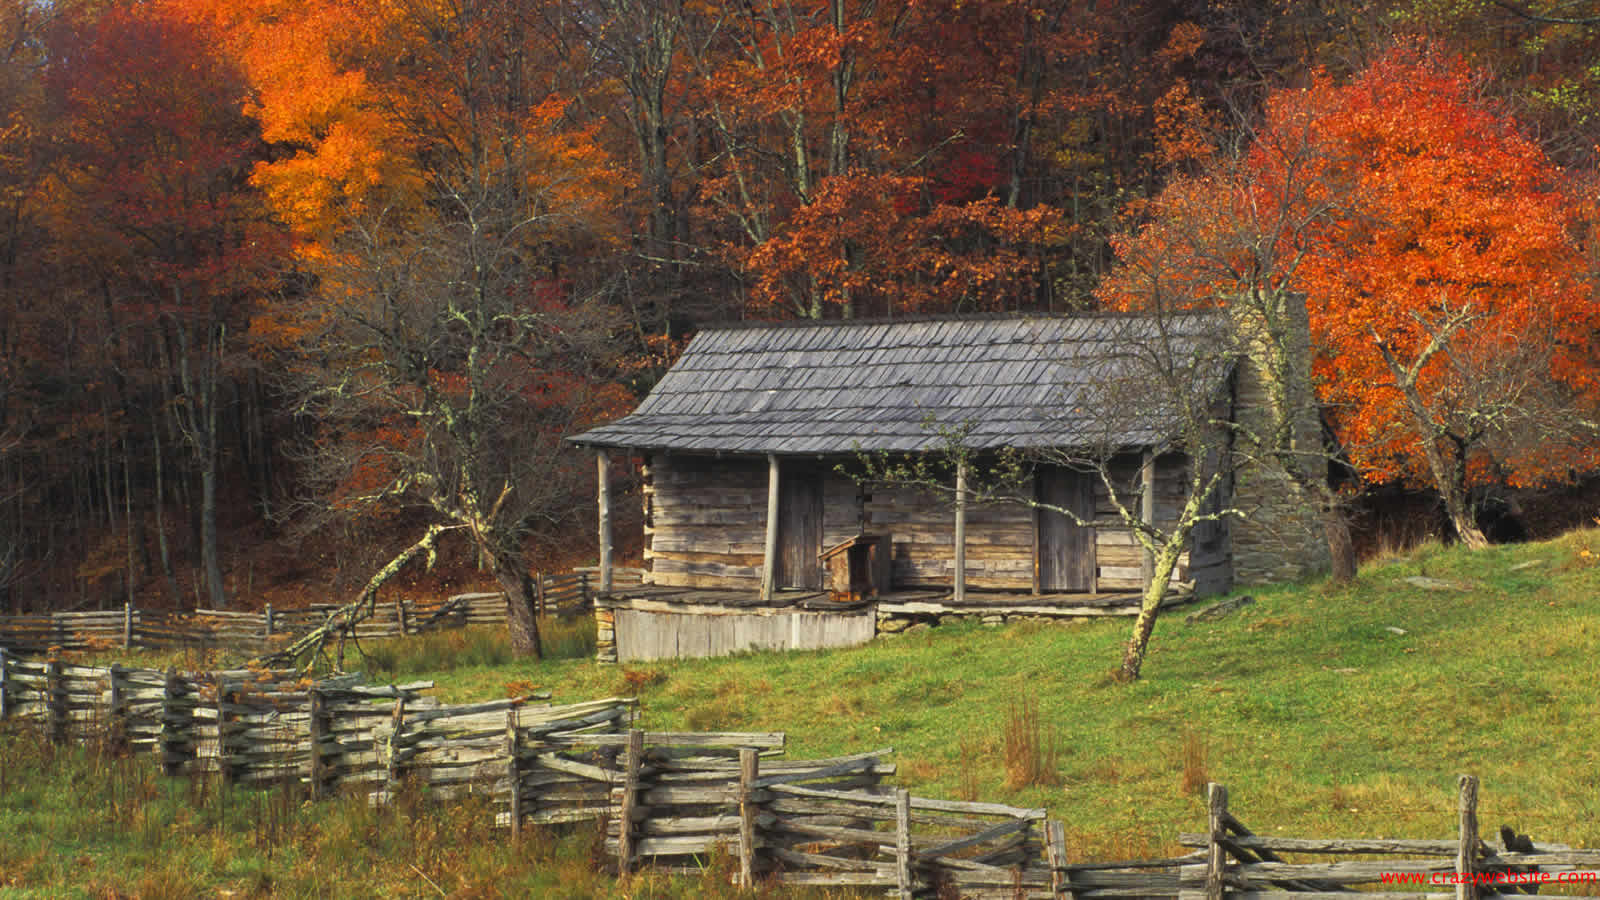 Fall Landscapes Puter Desktop Wallpaper Background